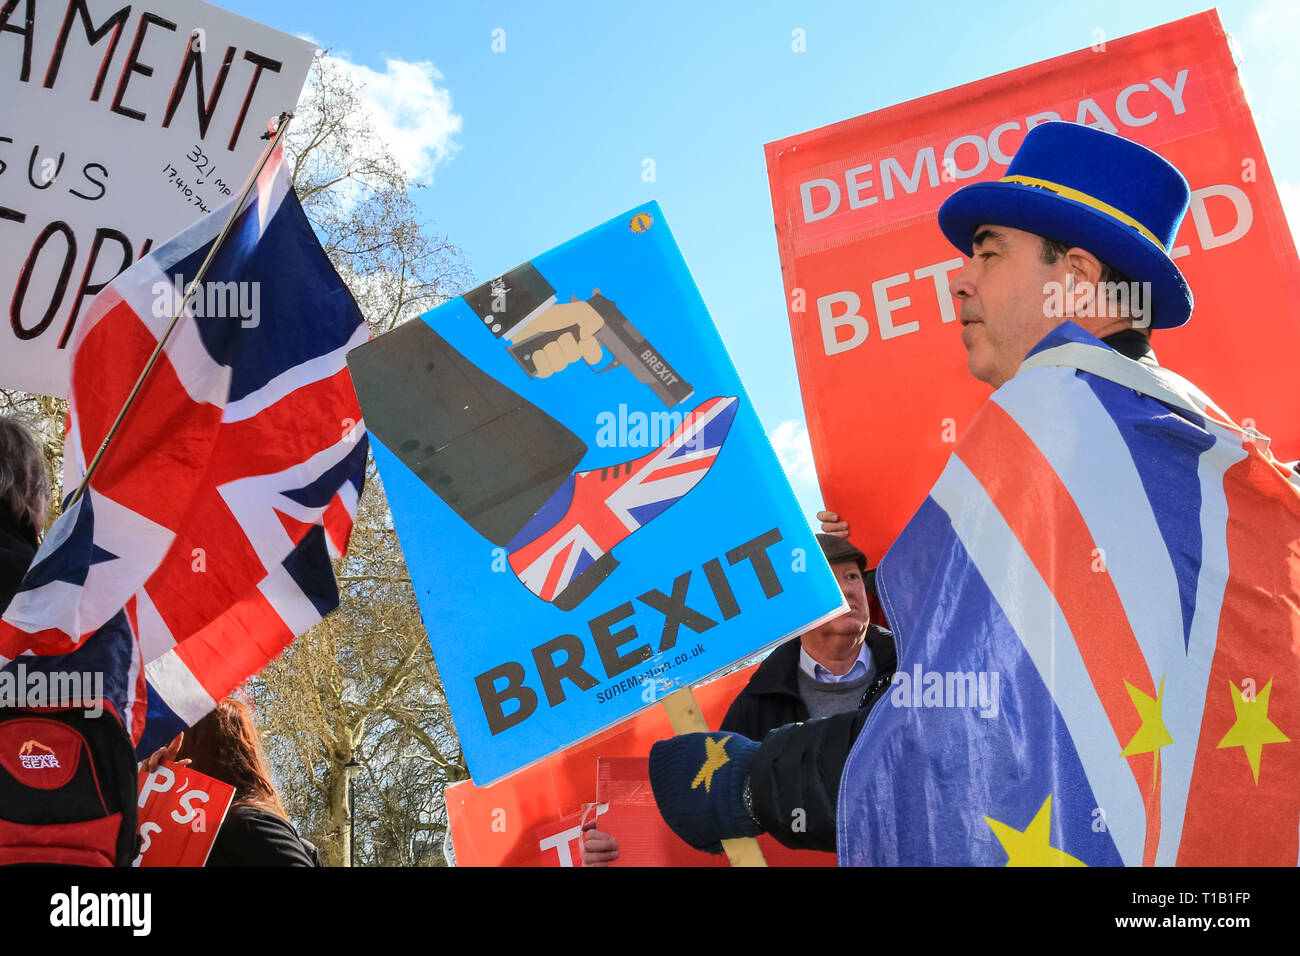 Westminster, London, UK, le 25 mars 2019. Pro- et Anti-Brexit chant protestataires et fulminer à l'autre à l'extérieur du Parlement de Westminster, sur une autre journée mouvementée d'incertitude politique autour Brexit. Credit : Imageplotter/Alamy Live News Banque D'Images